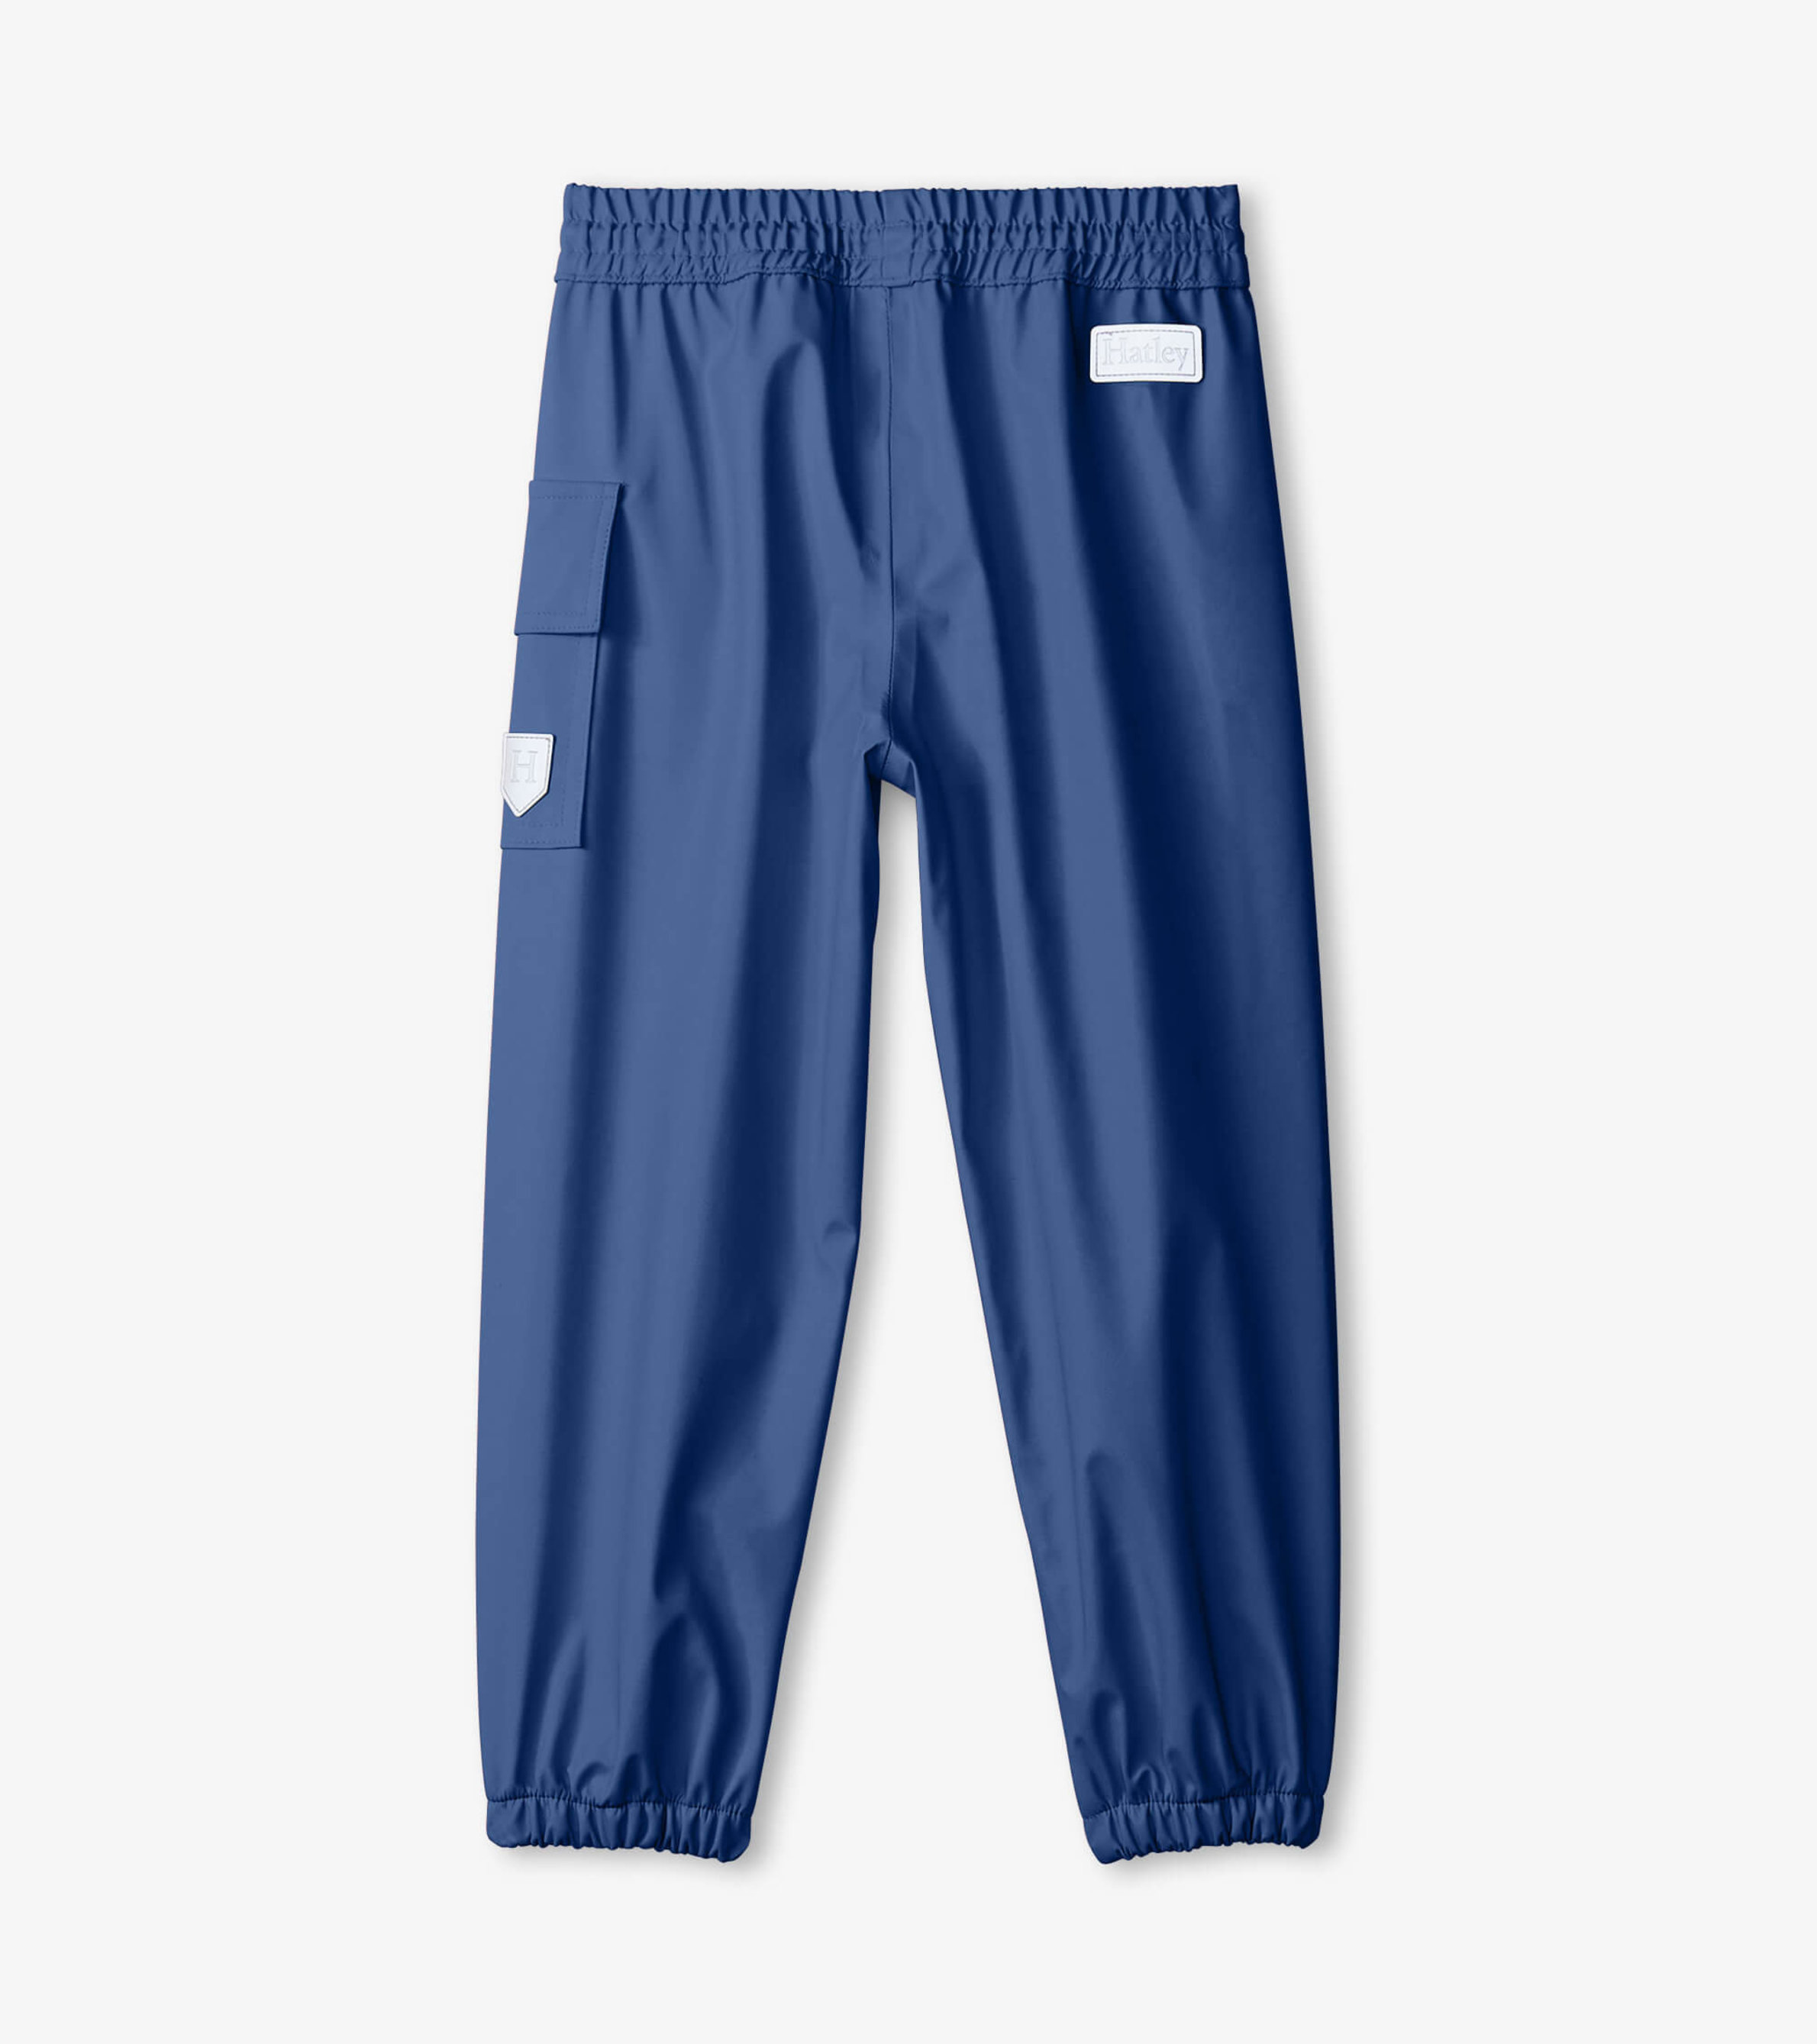 Standard Water Resistant Pants.